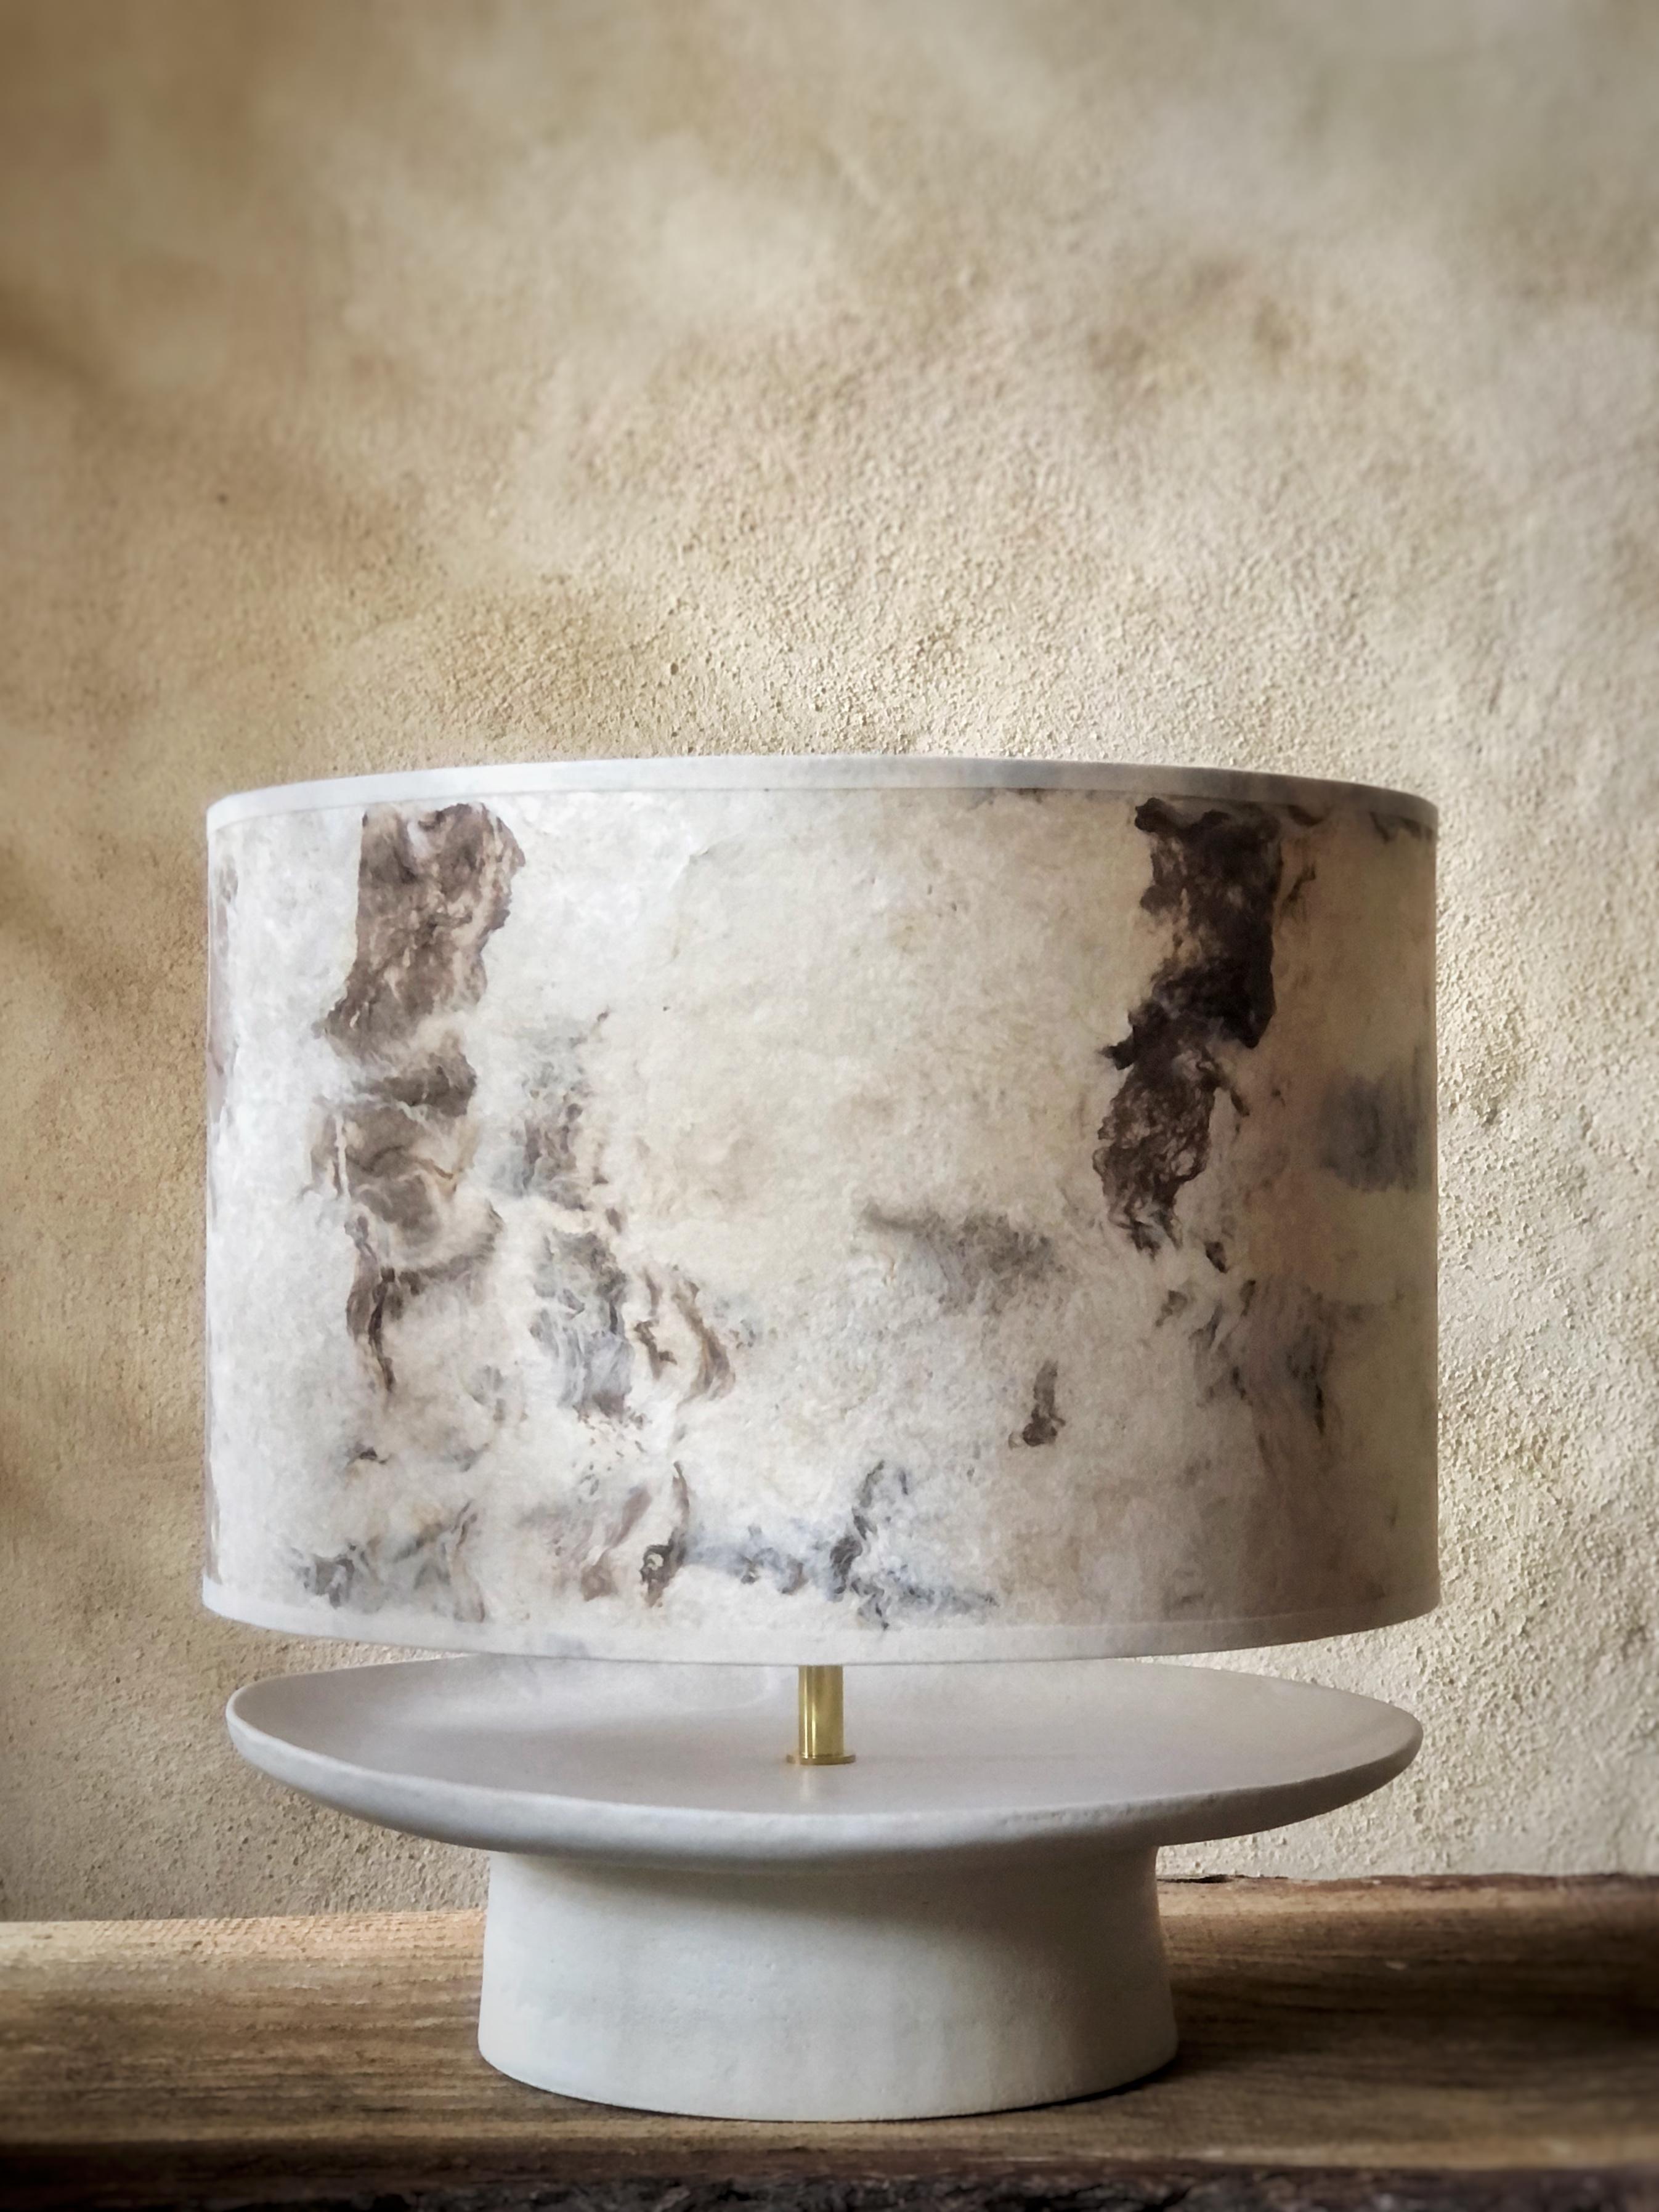 Japanische tasse tischlampe by Sophie Vaidie
Einzigartig.
Abmessungen: Ø 35 x H 35 cm. 
MATERIALIEN: Beigefarbenes Steingut mit weißer matter Glasur und braunem Maulbeerpapier.

Alle unsere Lampen können je nach Land verkabelt werden. Wenn es in die